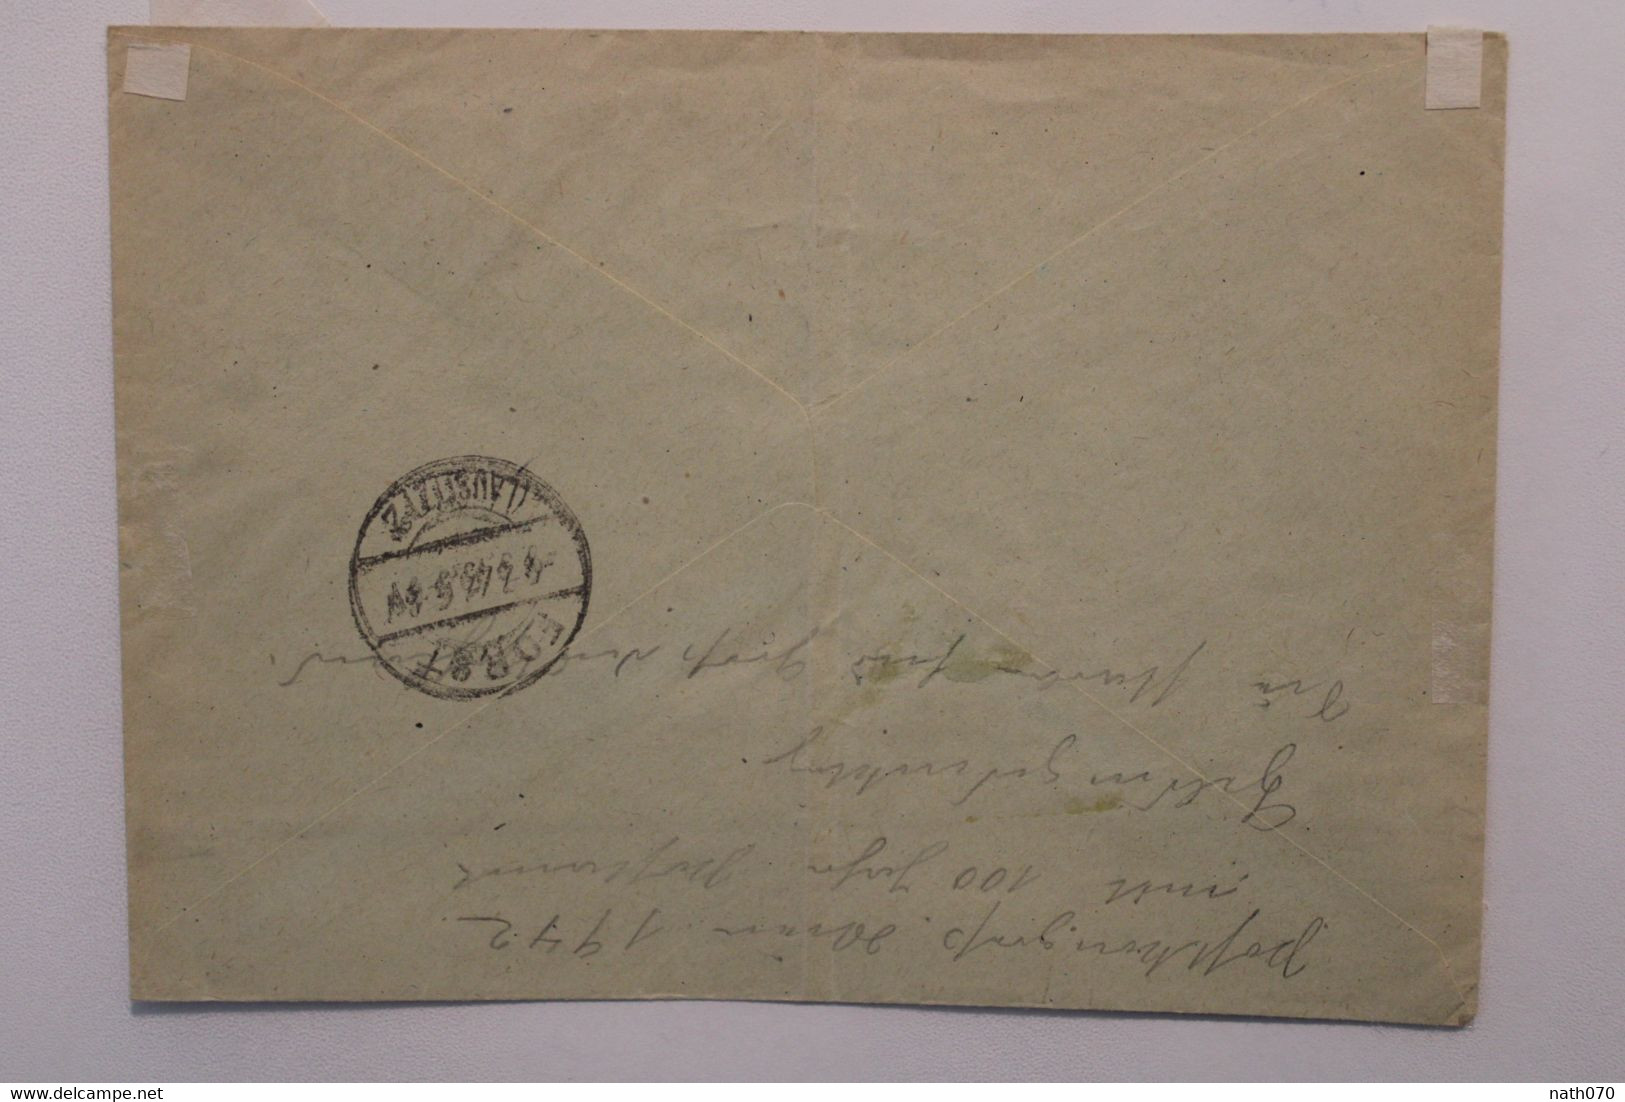 1943 Berlin 100 Jahre Postamt Forst Lausitz Cover Dt Reich Einschreiben Registered Wk2 - Lettres & Documents